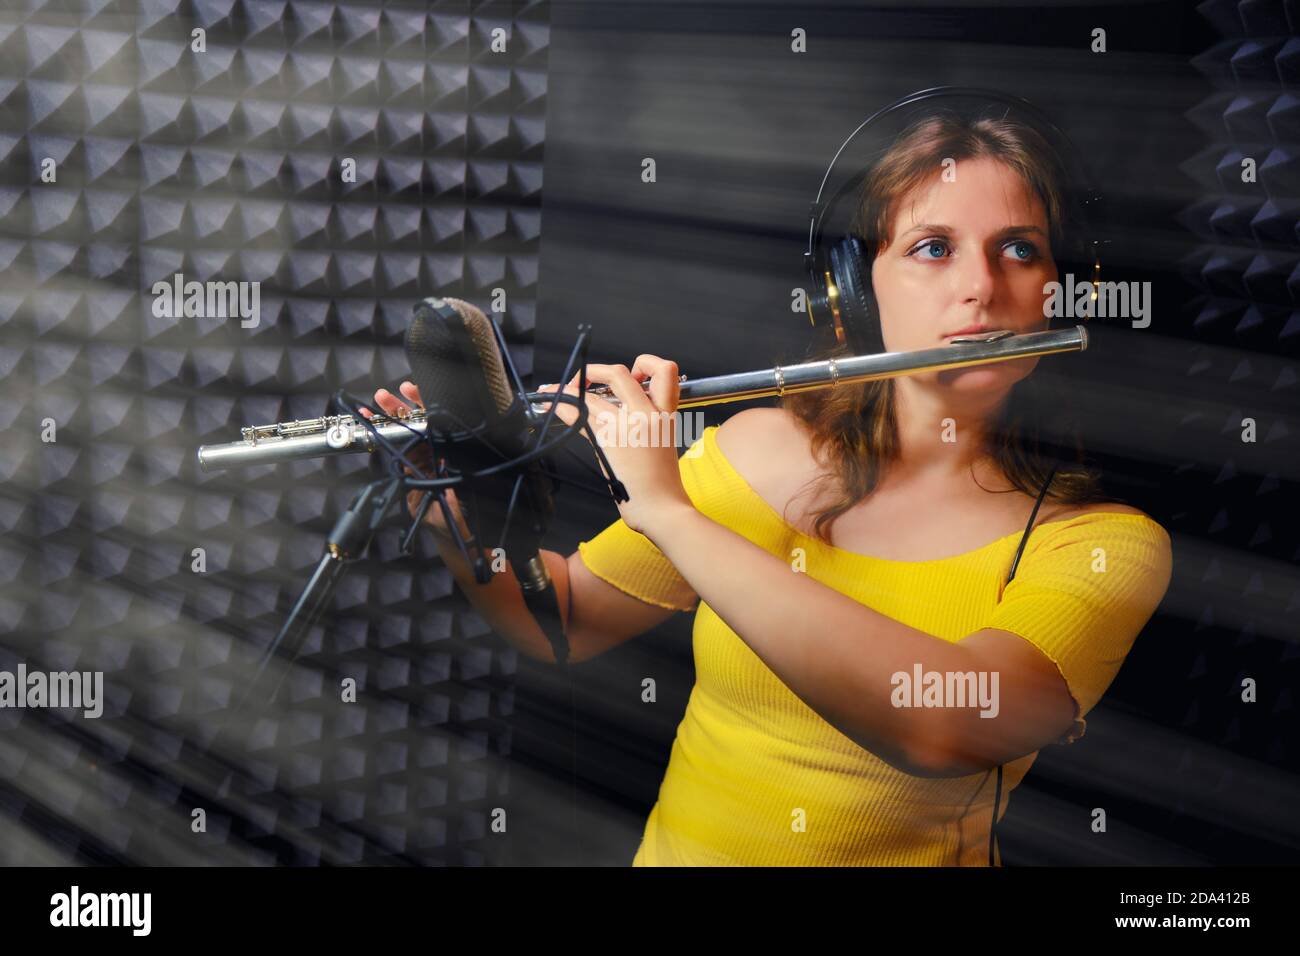 Une flûte joue dans un studio d'enregistrement. Femme flûtiste dans un casque jouant la flûte platine. Enregistrez des instruments de musique à vent avec une profession Banque D'Images